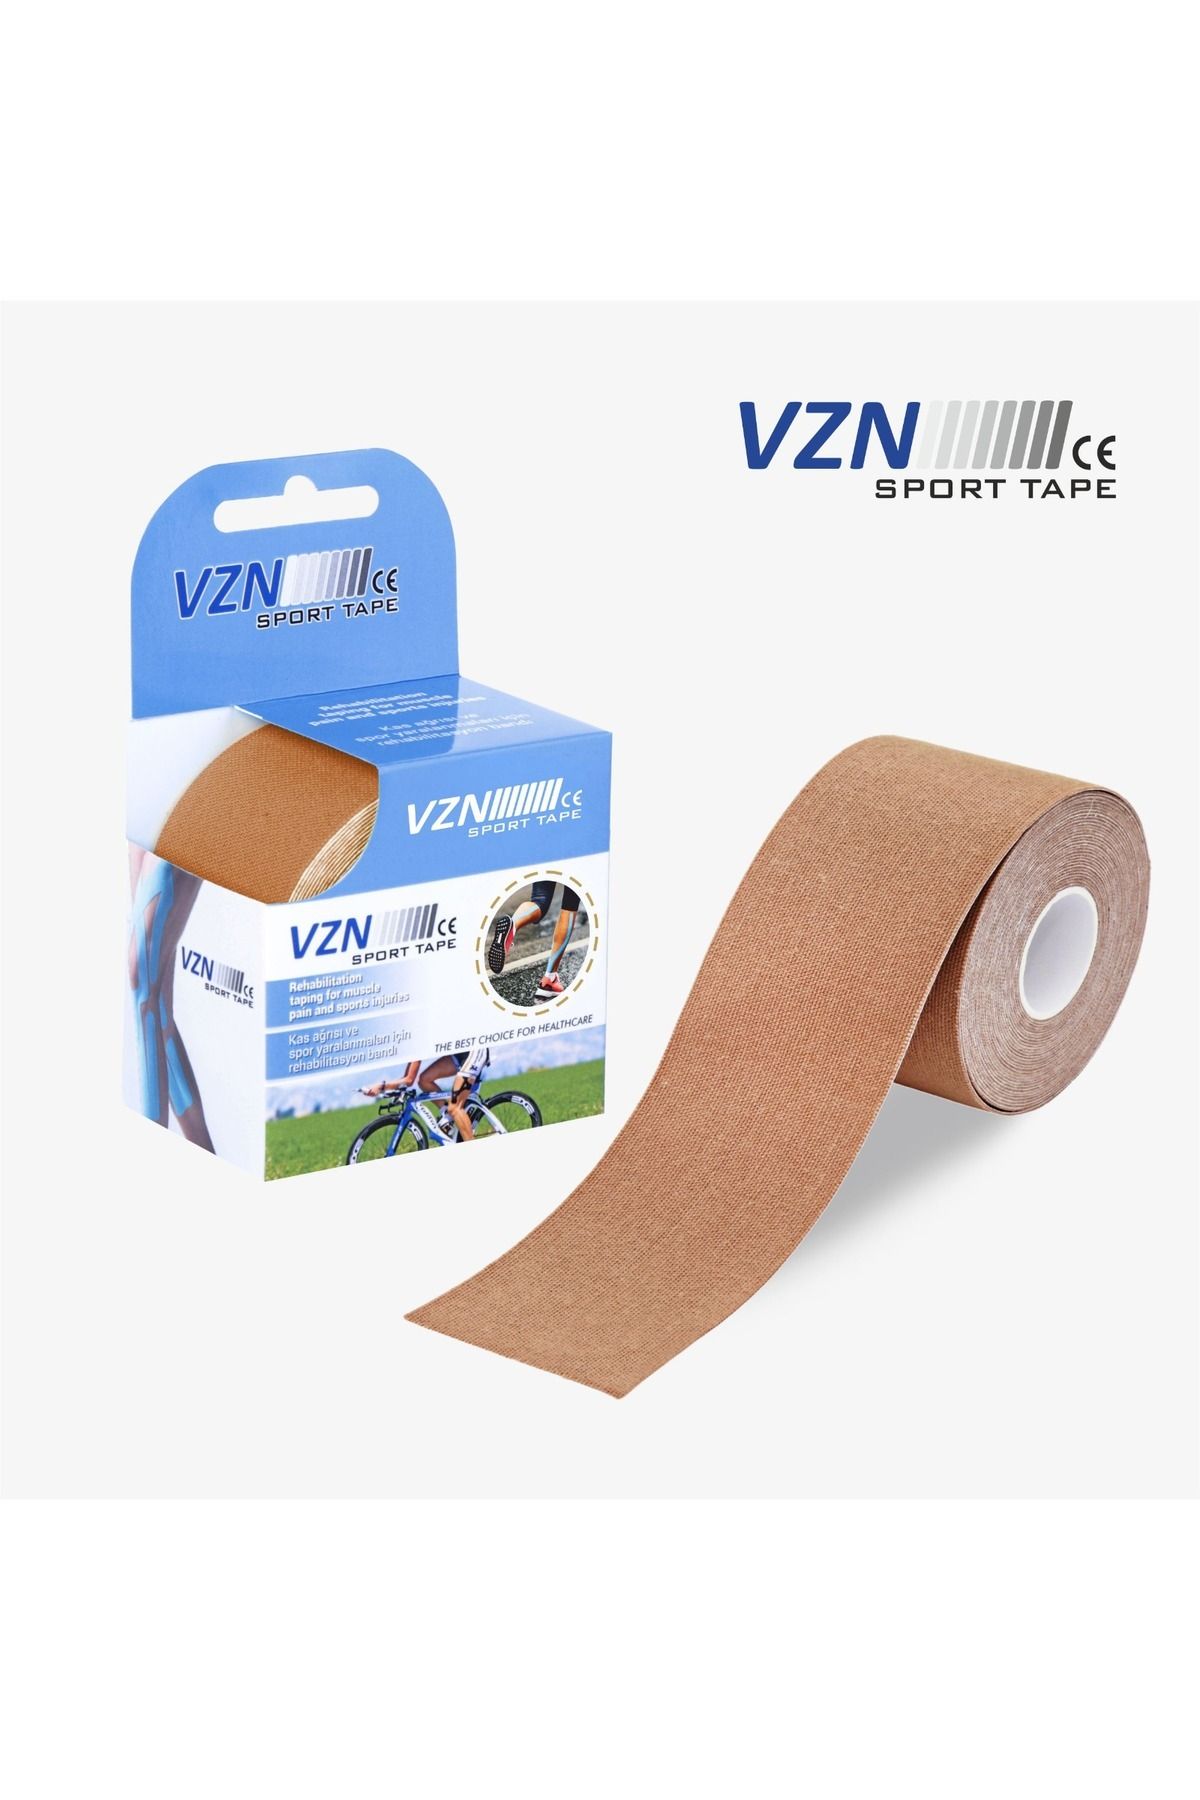 VZN Tape Sport Tape Ve Spor Yaralanmaları Rehabilitasyon Bandı